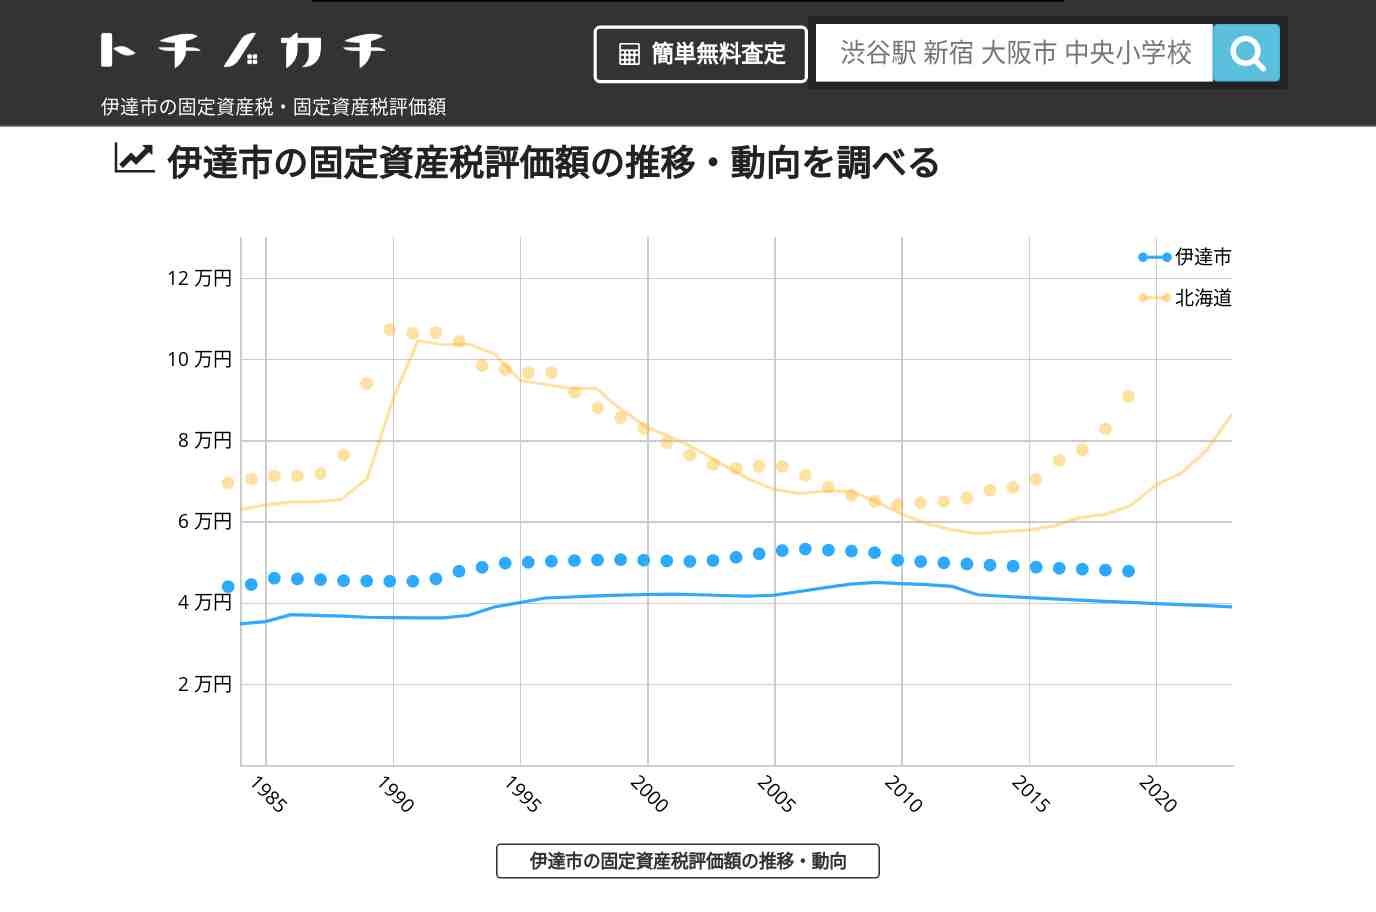 関内小学校(北海道 伊達市)周辺の固定資産税・固定資産税評価額 | トチノカチ